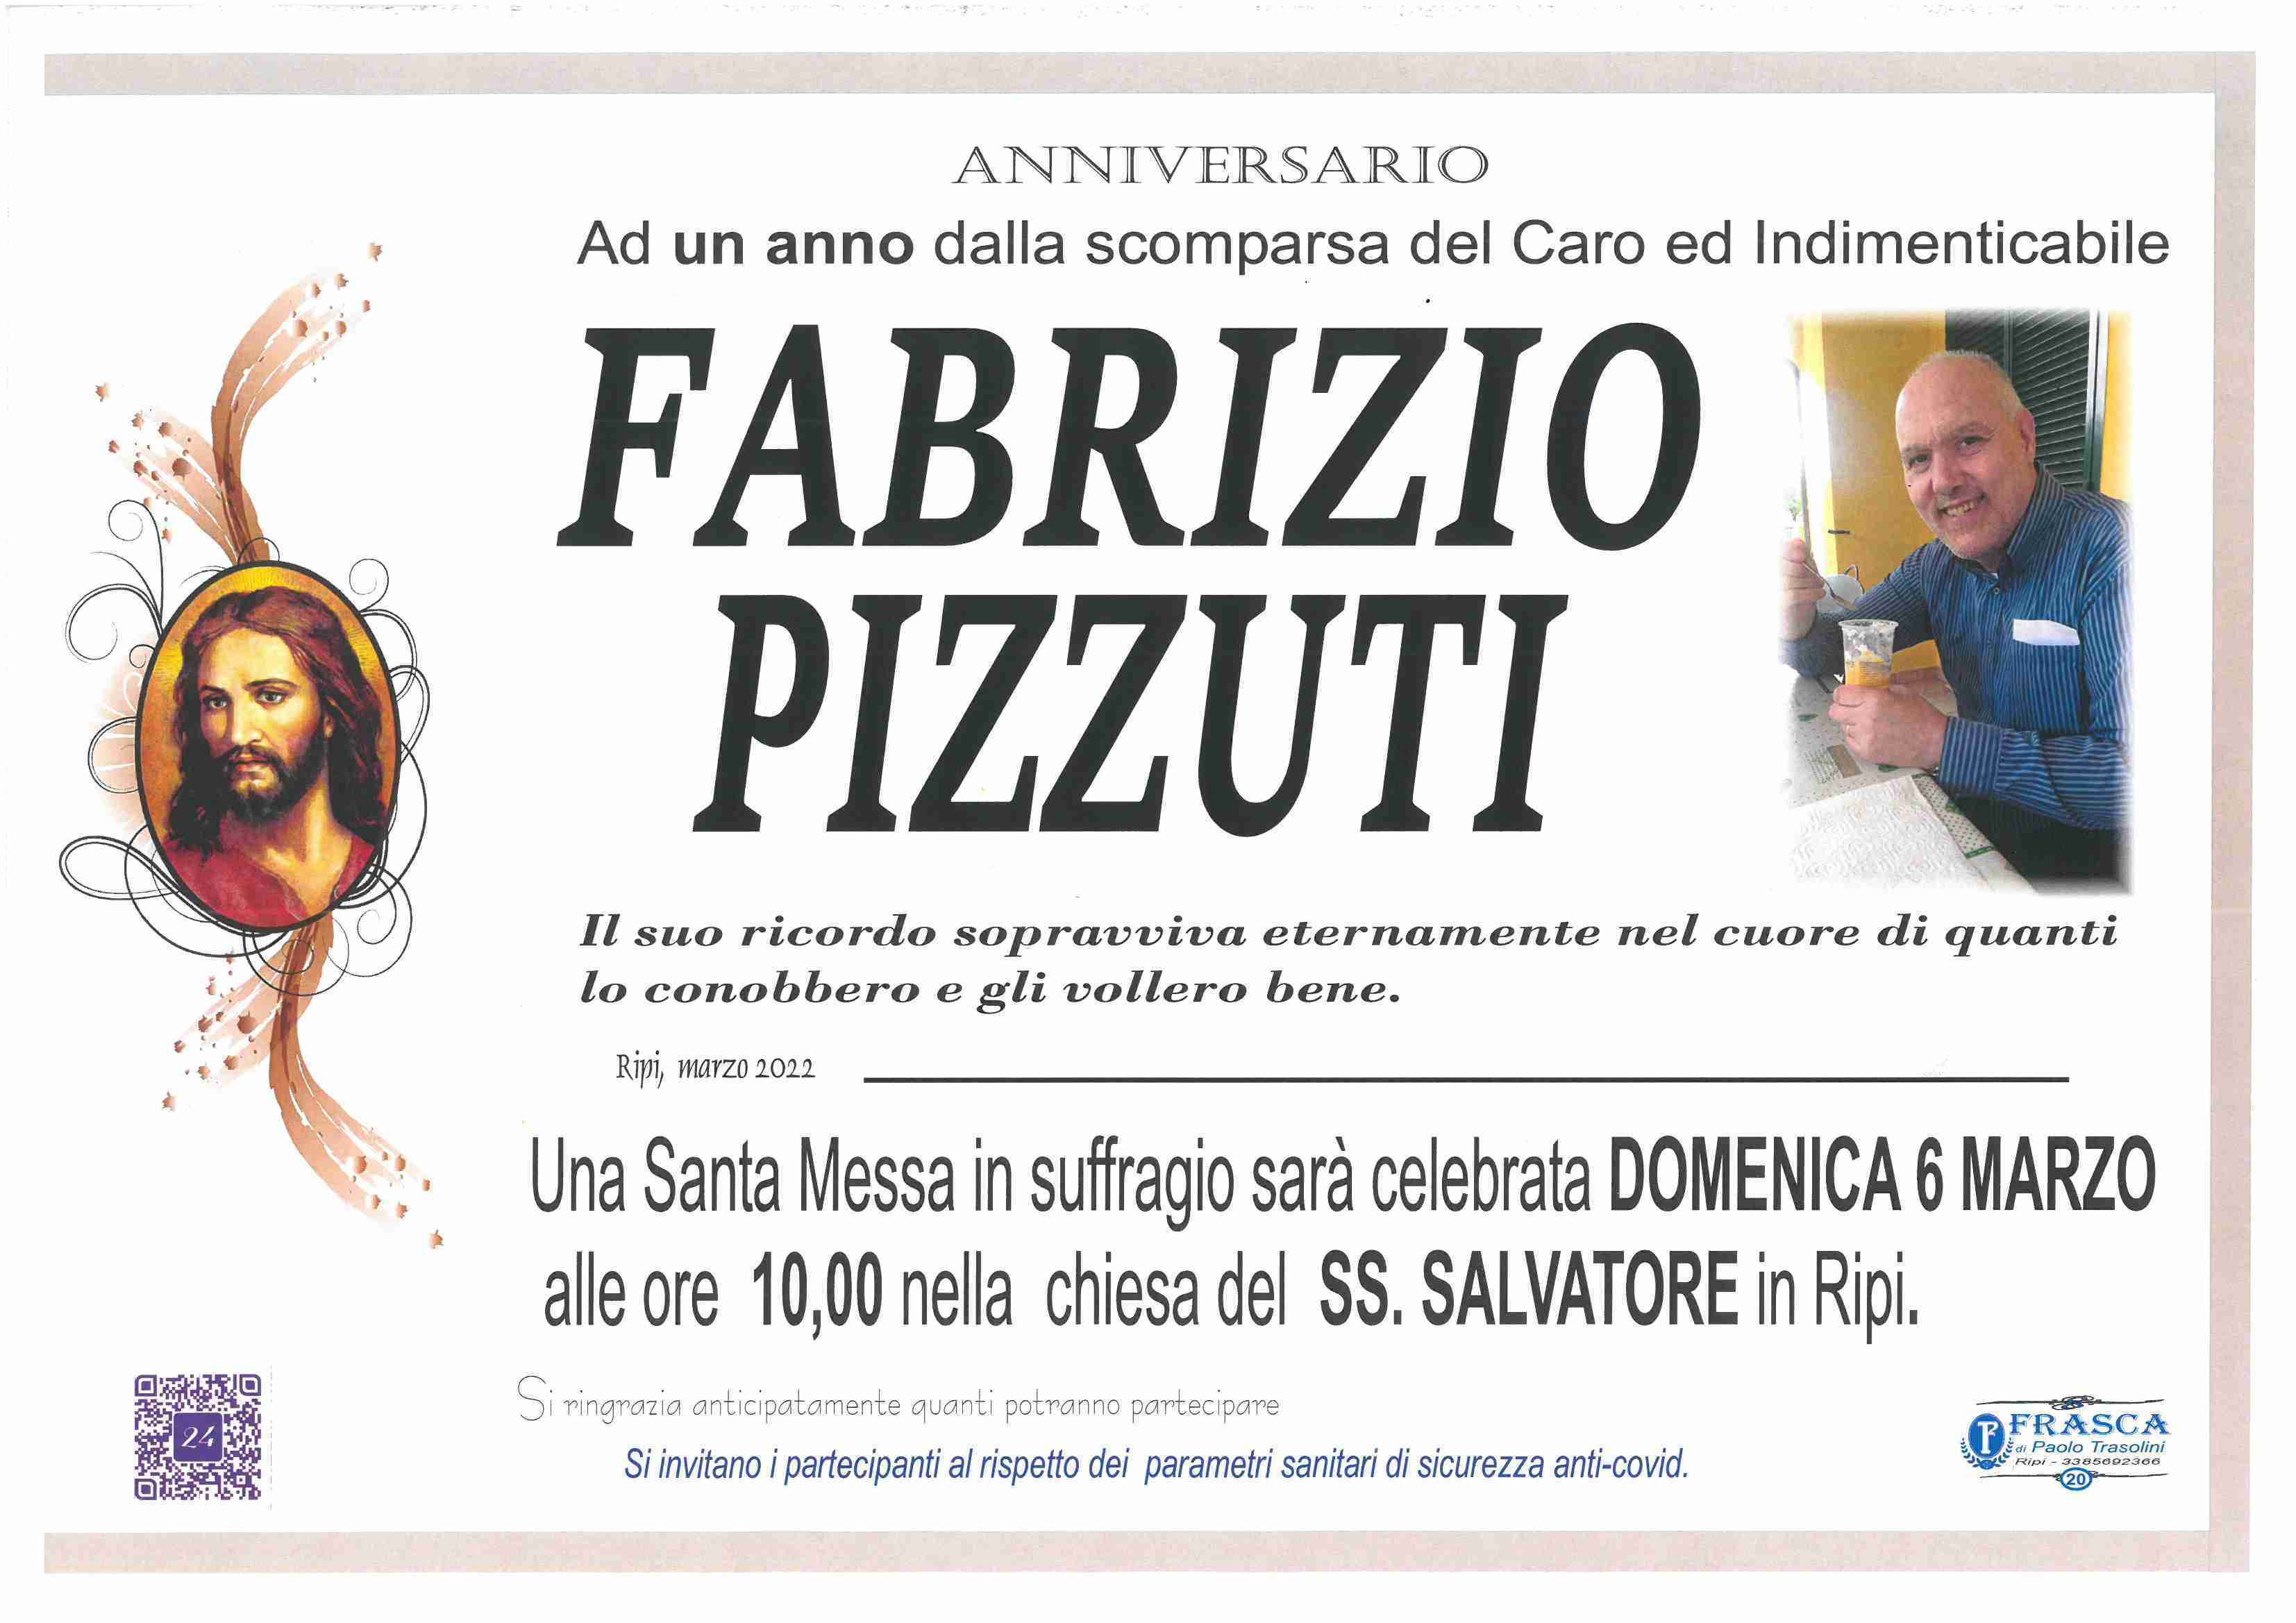 Fabrizio Pizzuti